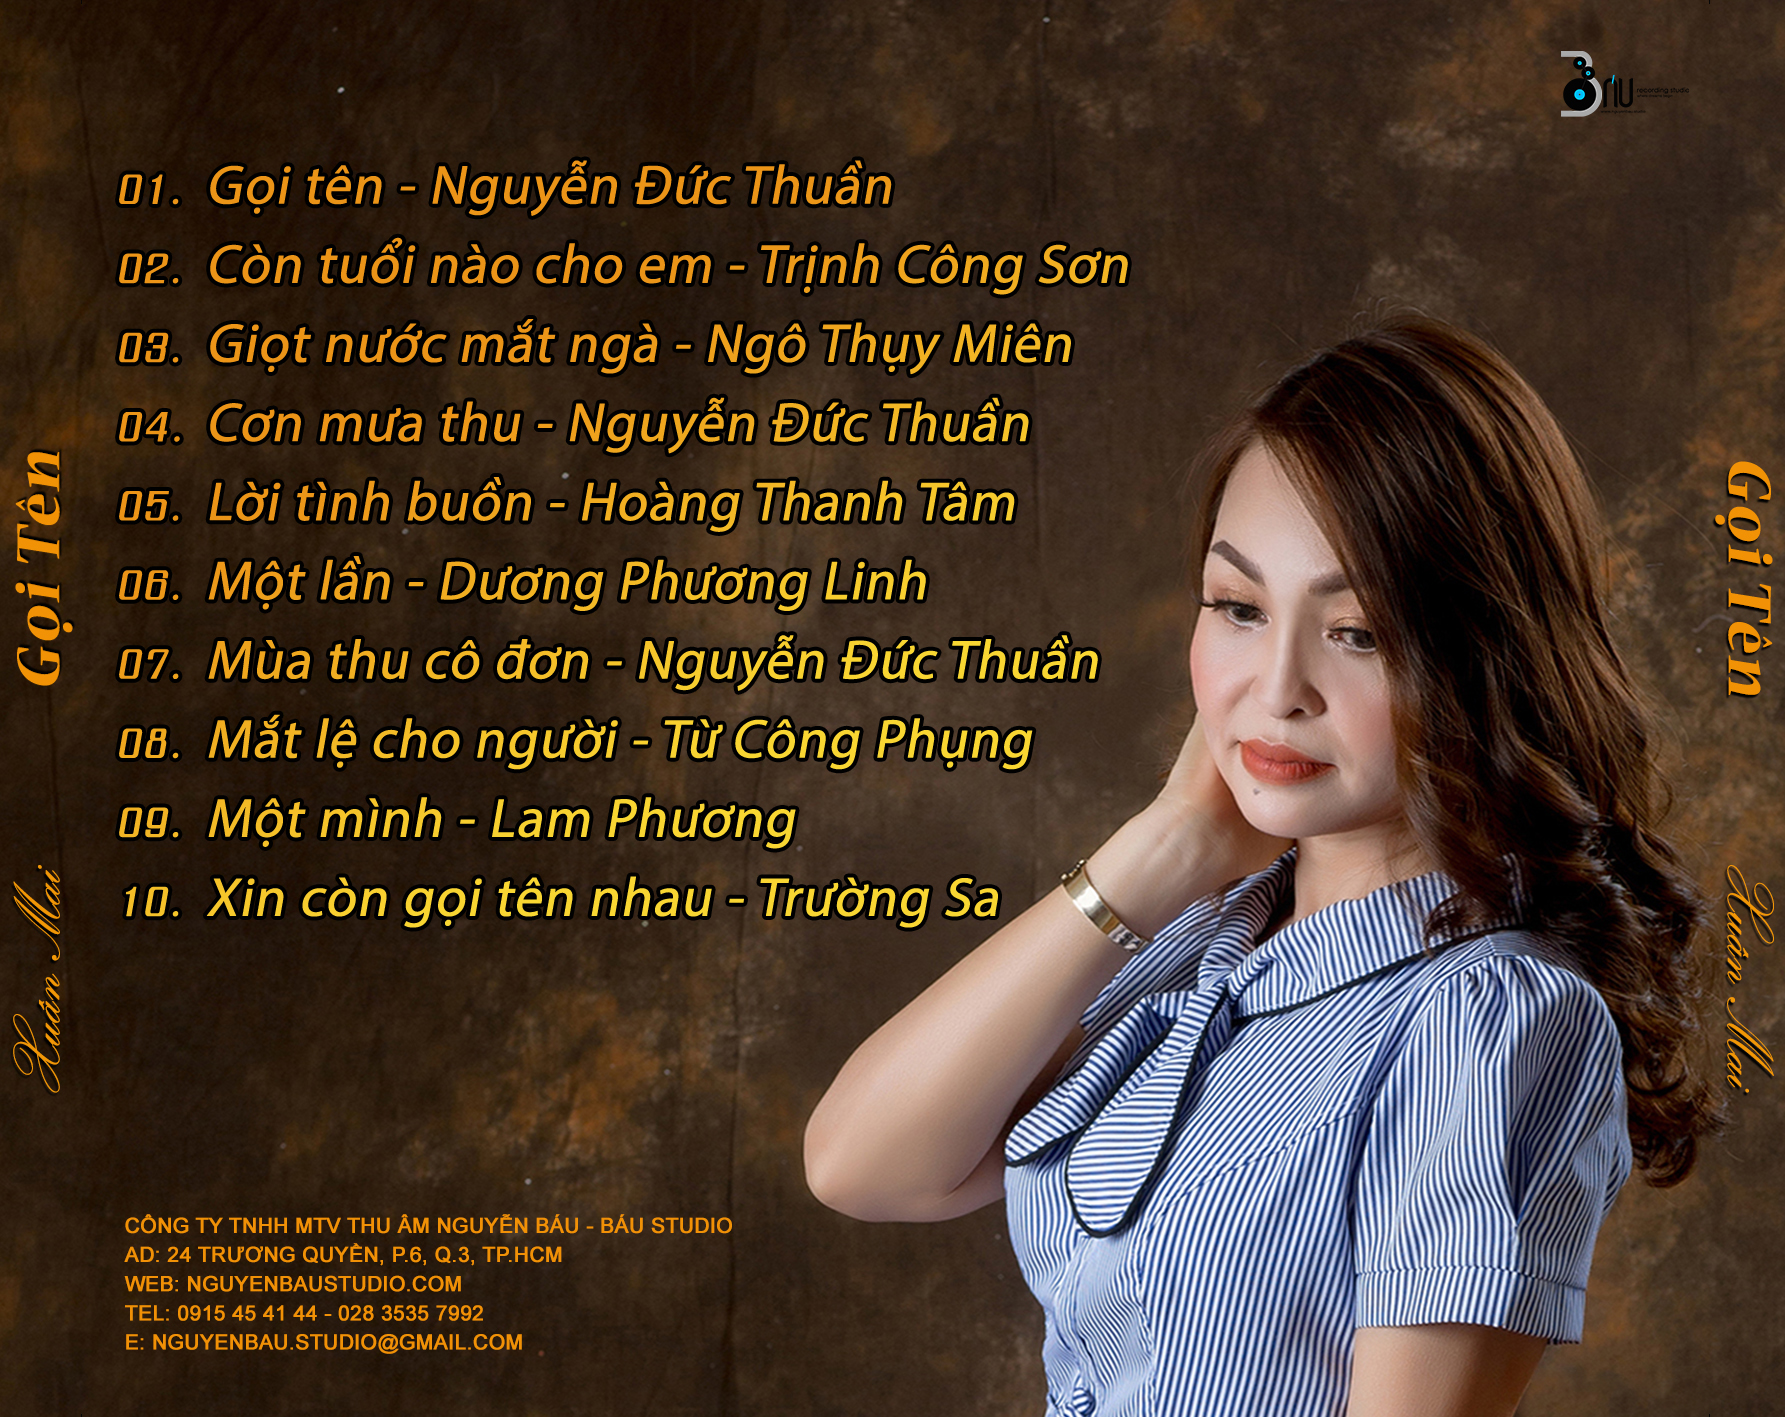 CD Thy Mai - Nguyen Duc Thuan